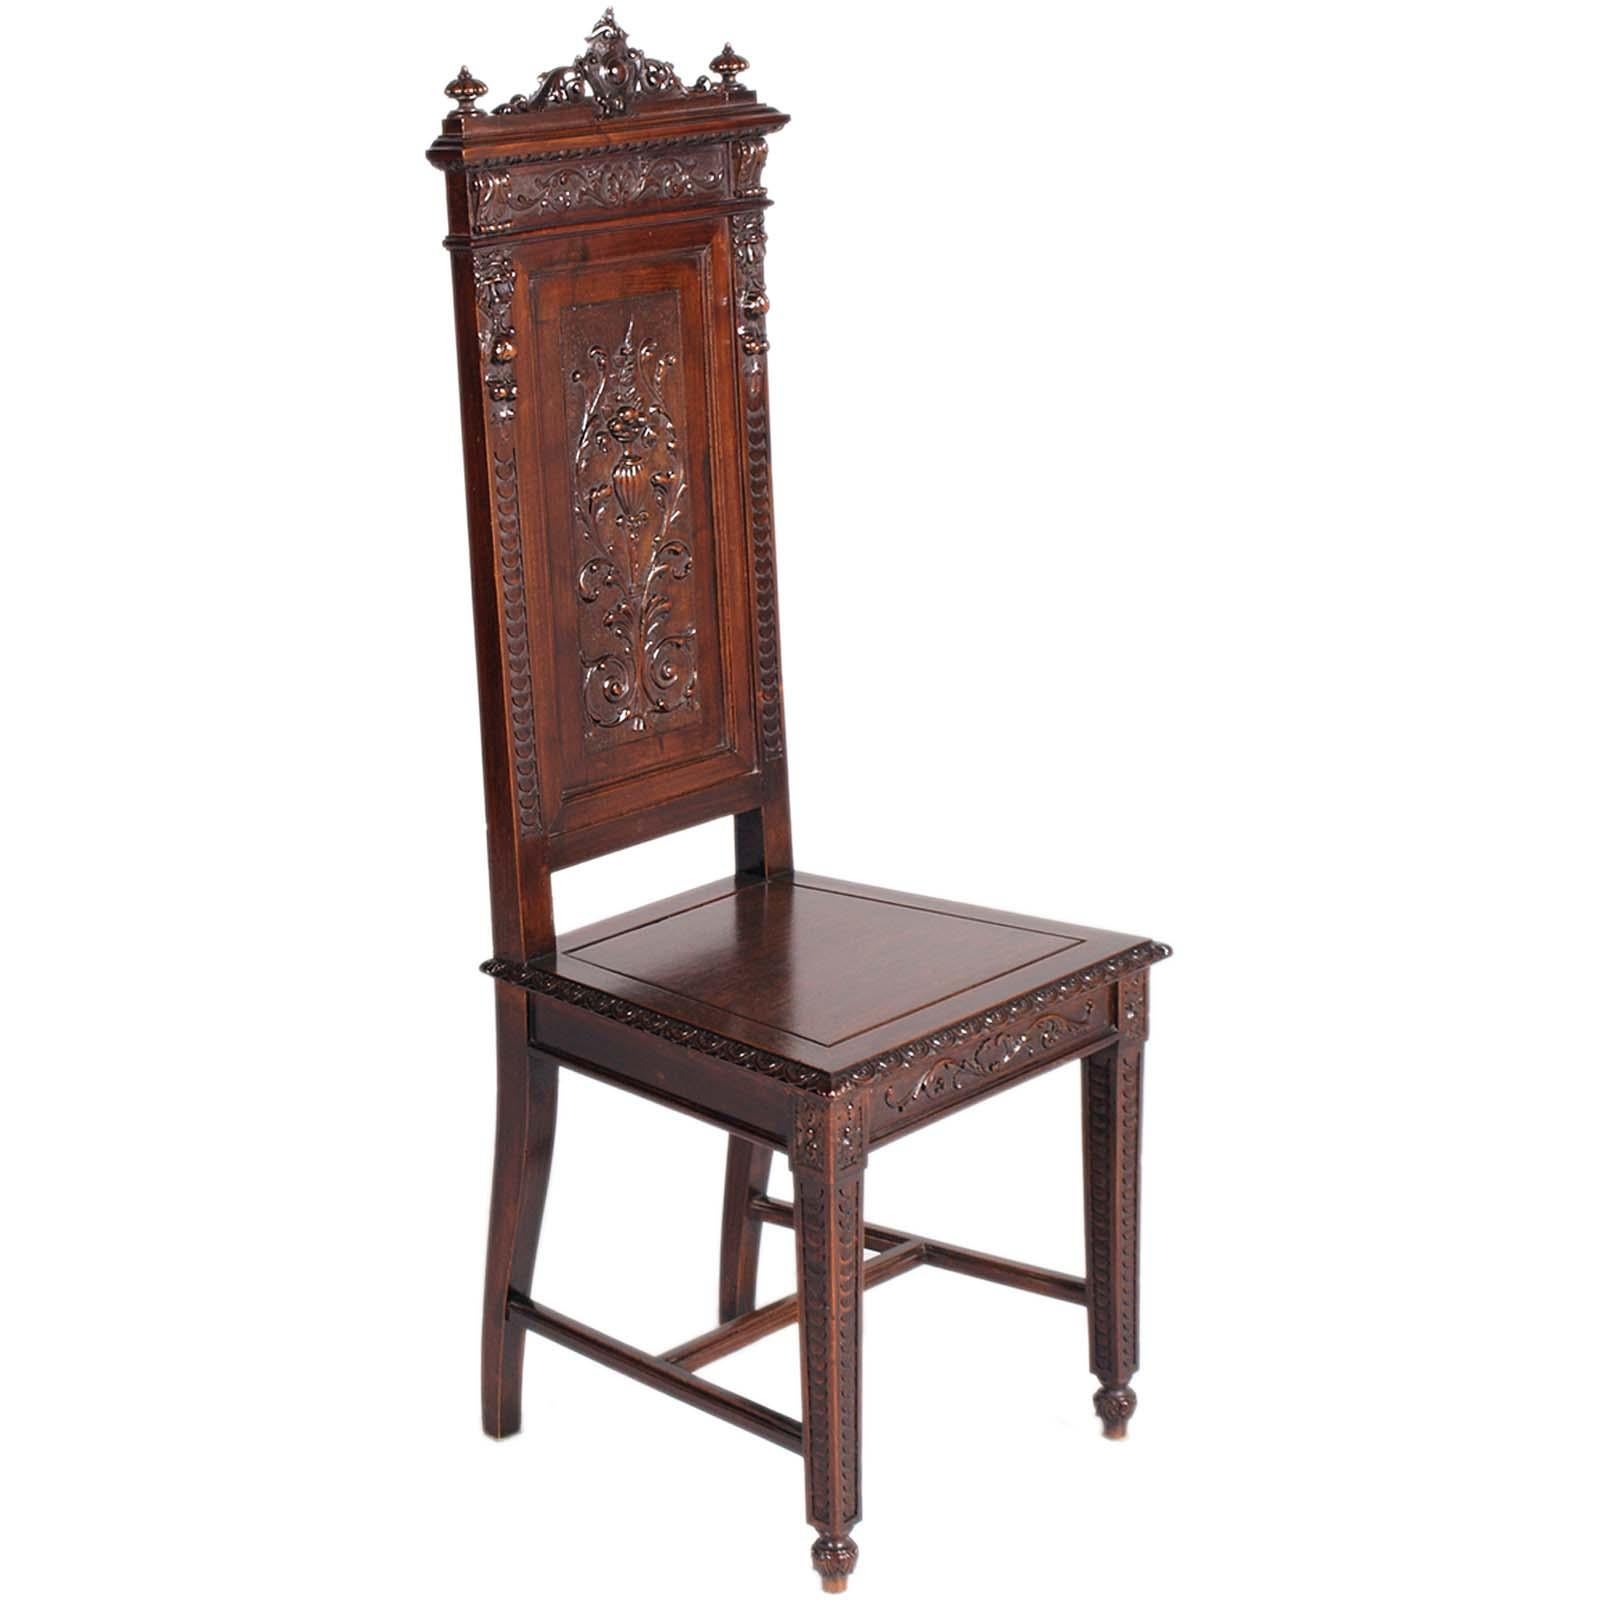 Spectaculaire paire de chaises largement sculptées dans le style éclectique de la période Art Nouveau par les frères Testolini de Venise. En noyer sculpté et ébénisé à la main.
Grâce à leur élégance et à leur raffinement, ils embellissent tout type